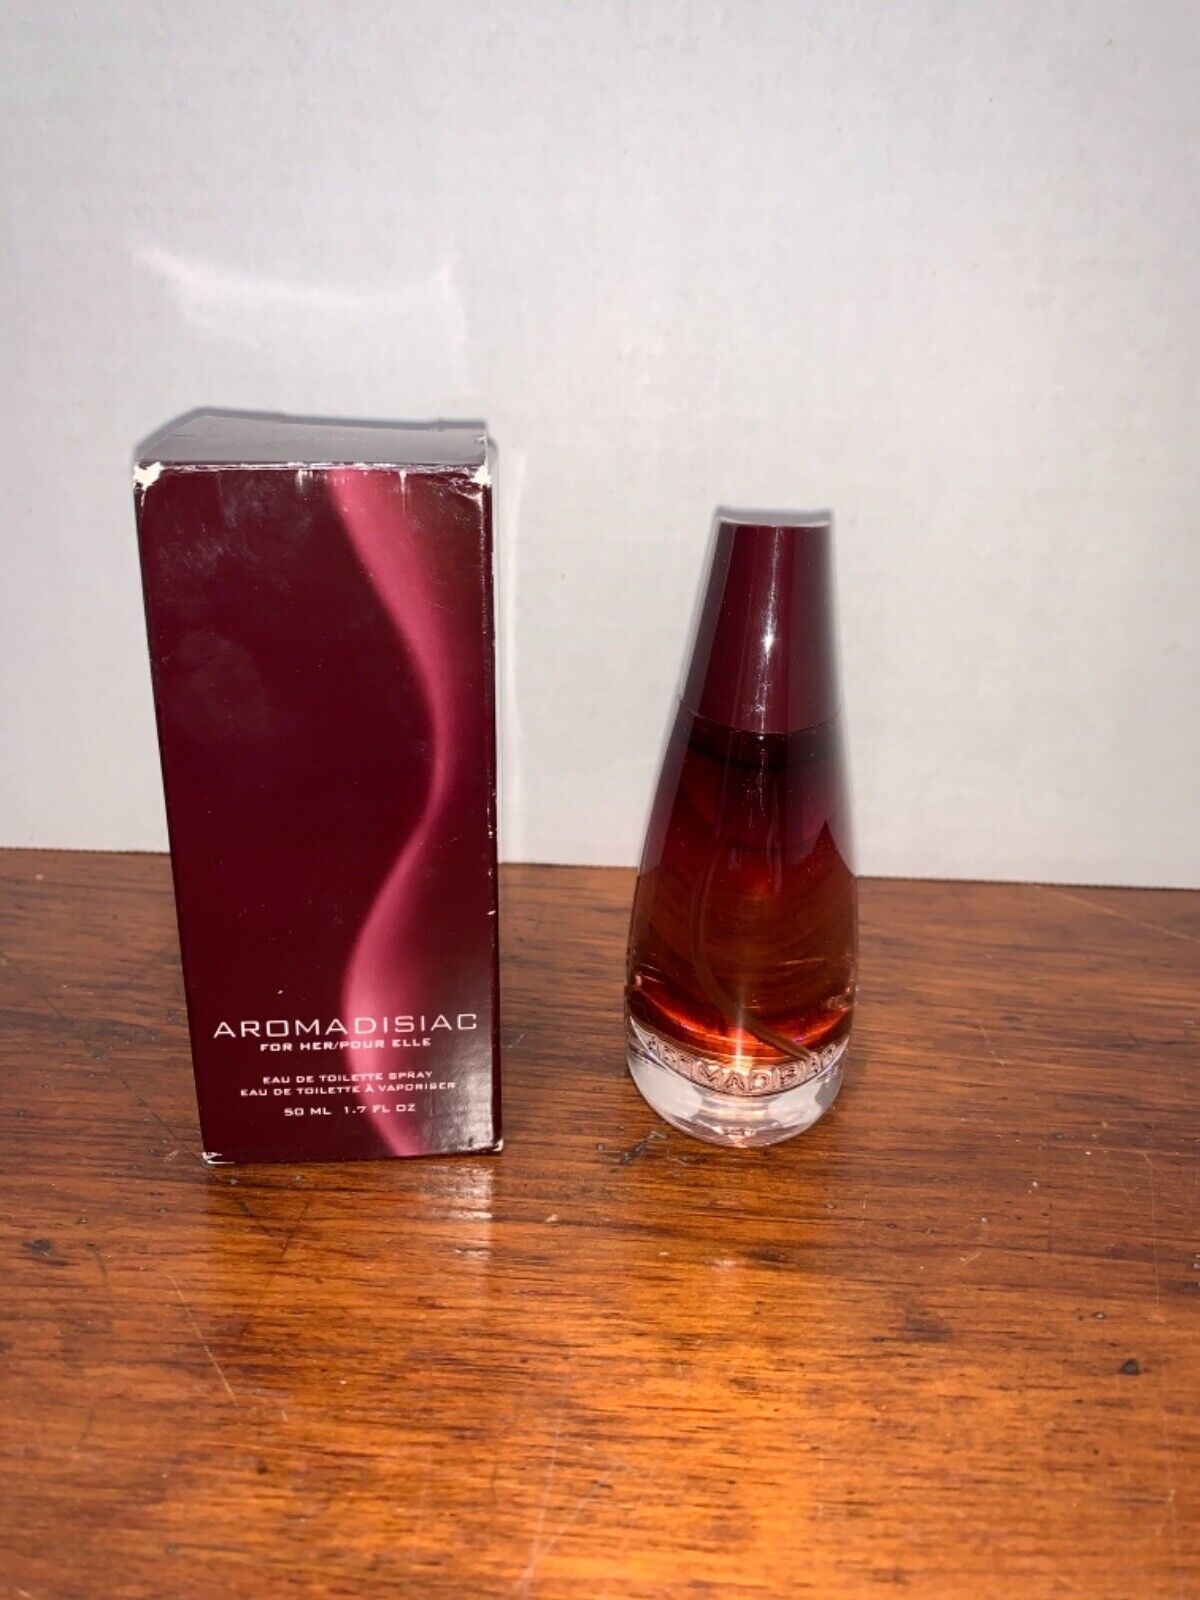 Avon Aromadisiac for her eau de toilette Perfume Spray women NEW 1.7oz - $25.20